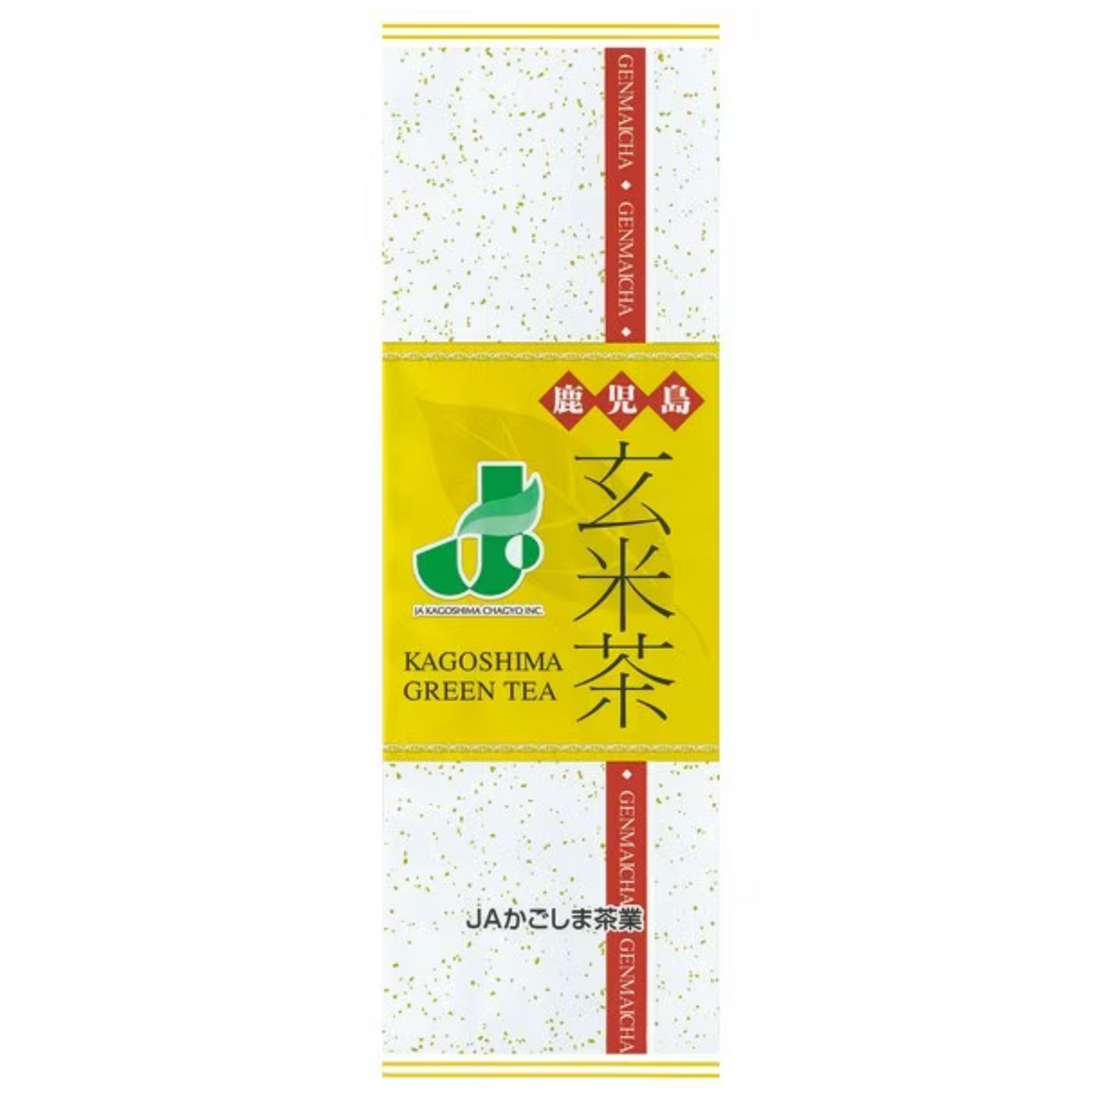 JA Kagoshima Tea Industry Genmaicha 200g